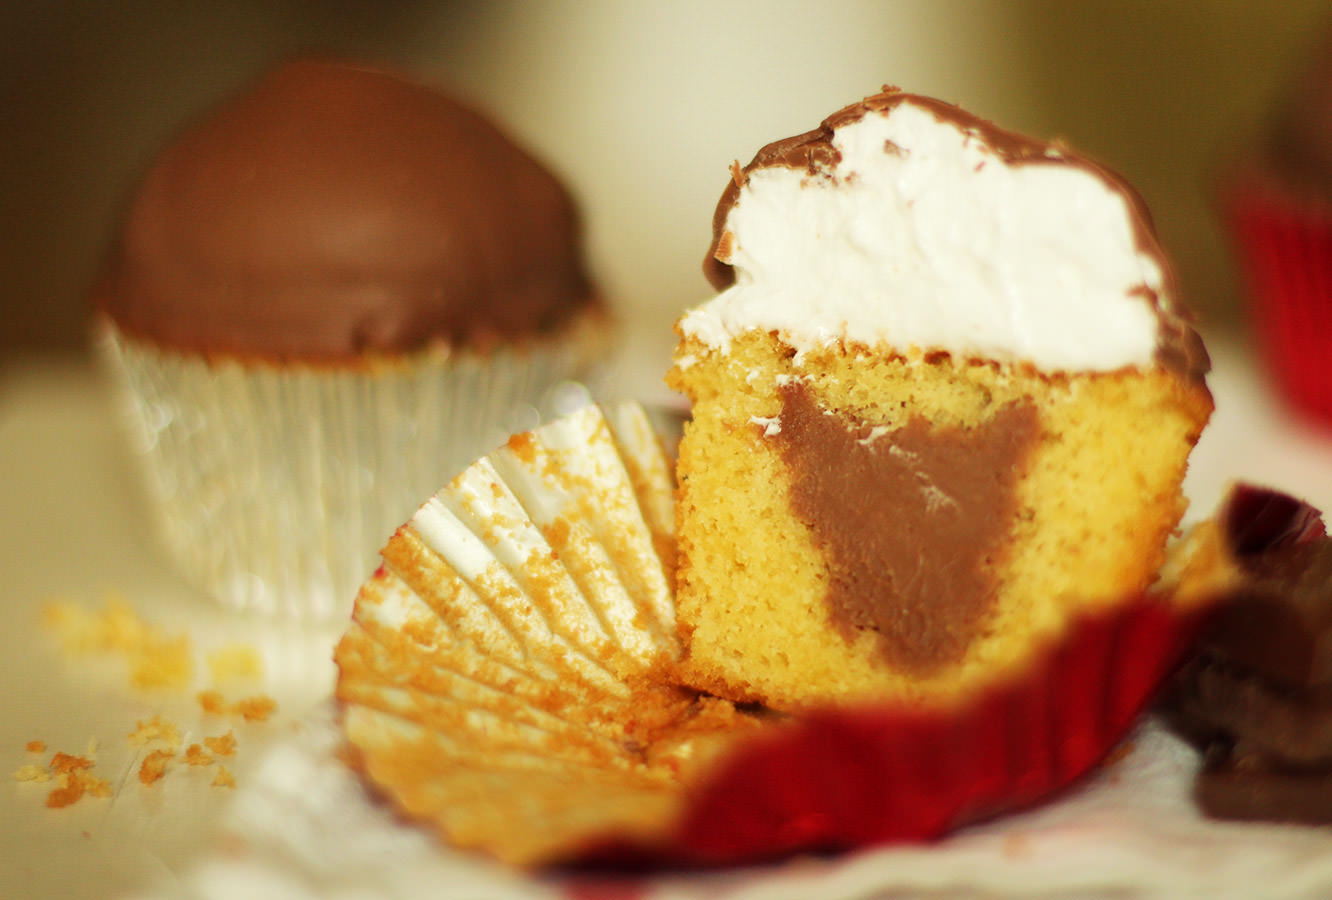 tunnocks-teacakes-cupcake-recipe-9